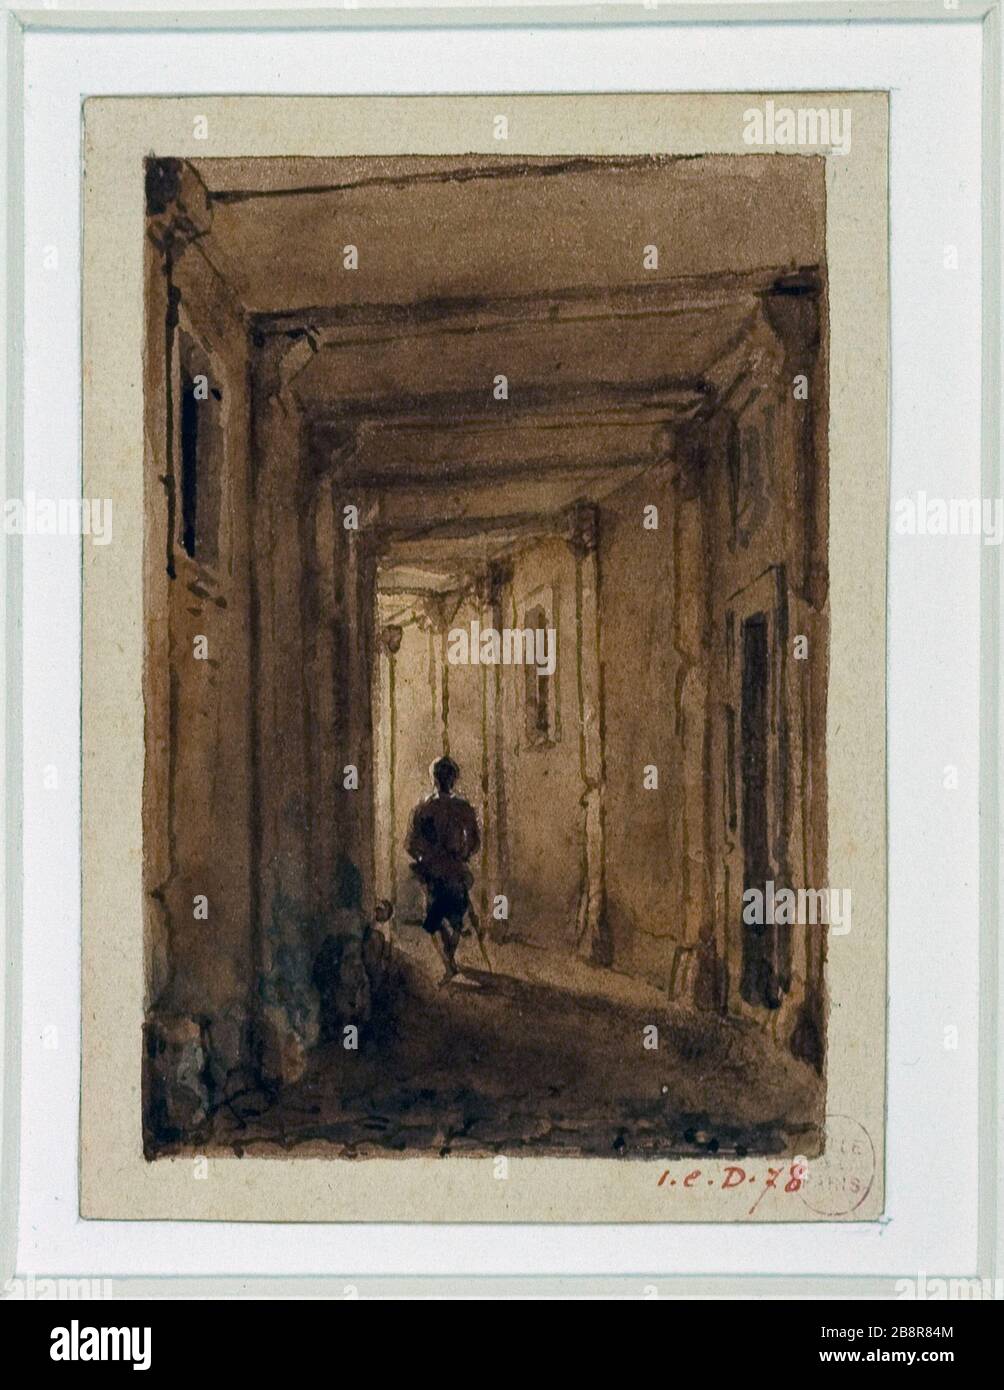 Passage of the Jacobins, Saint-Jacques Street Auguste Sébastien Bénard (1810-1873). 'Passage des Jacobins, rue Saint-Jacques'. Lavis de couleur. Paris, musée Carnavalet. Stock Photo